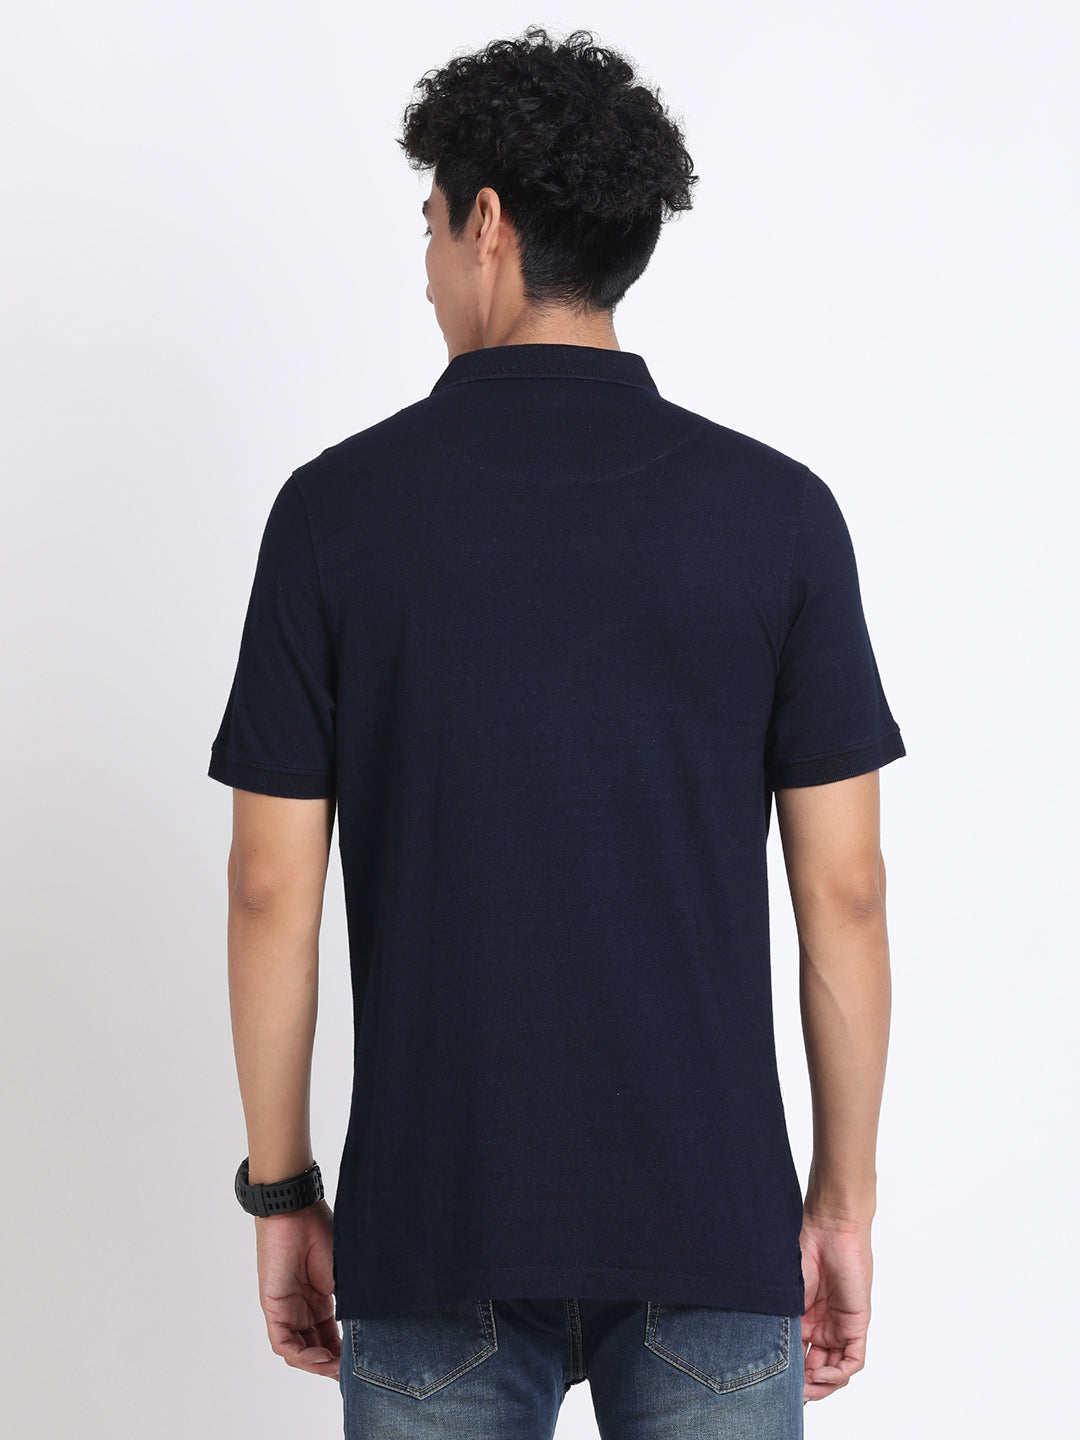 100% Cotton Indigo Navy Blue Plain Polo Neck Half Sleeve Casual T-Shirt